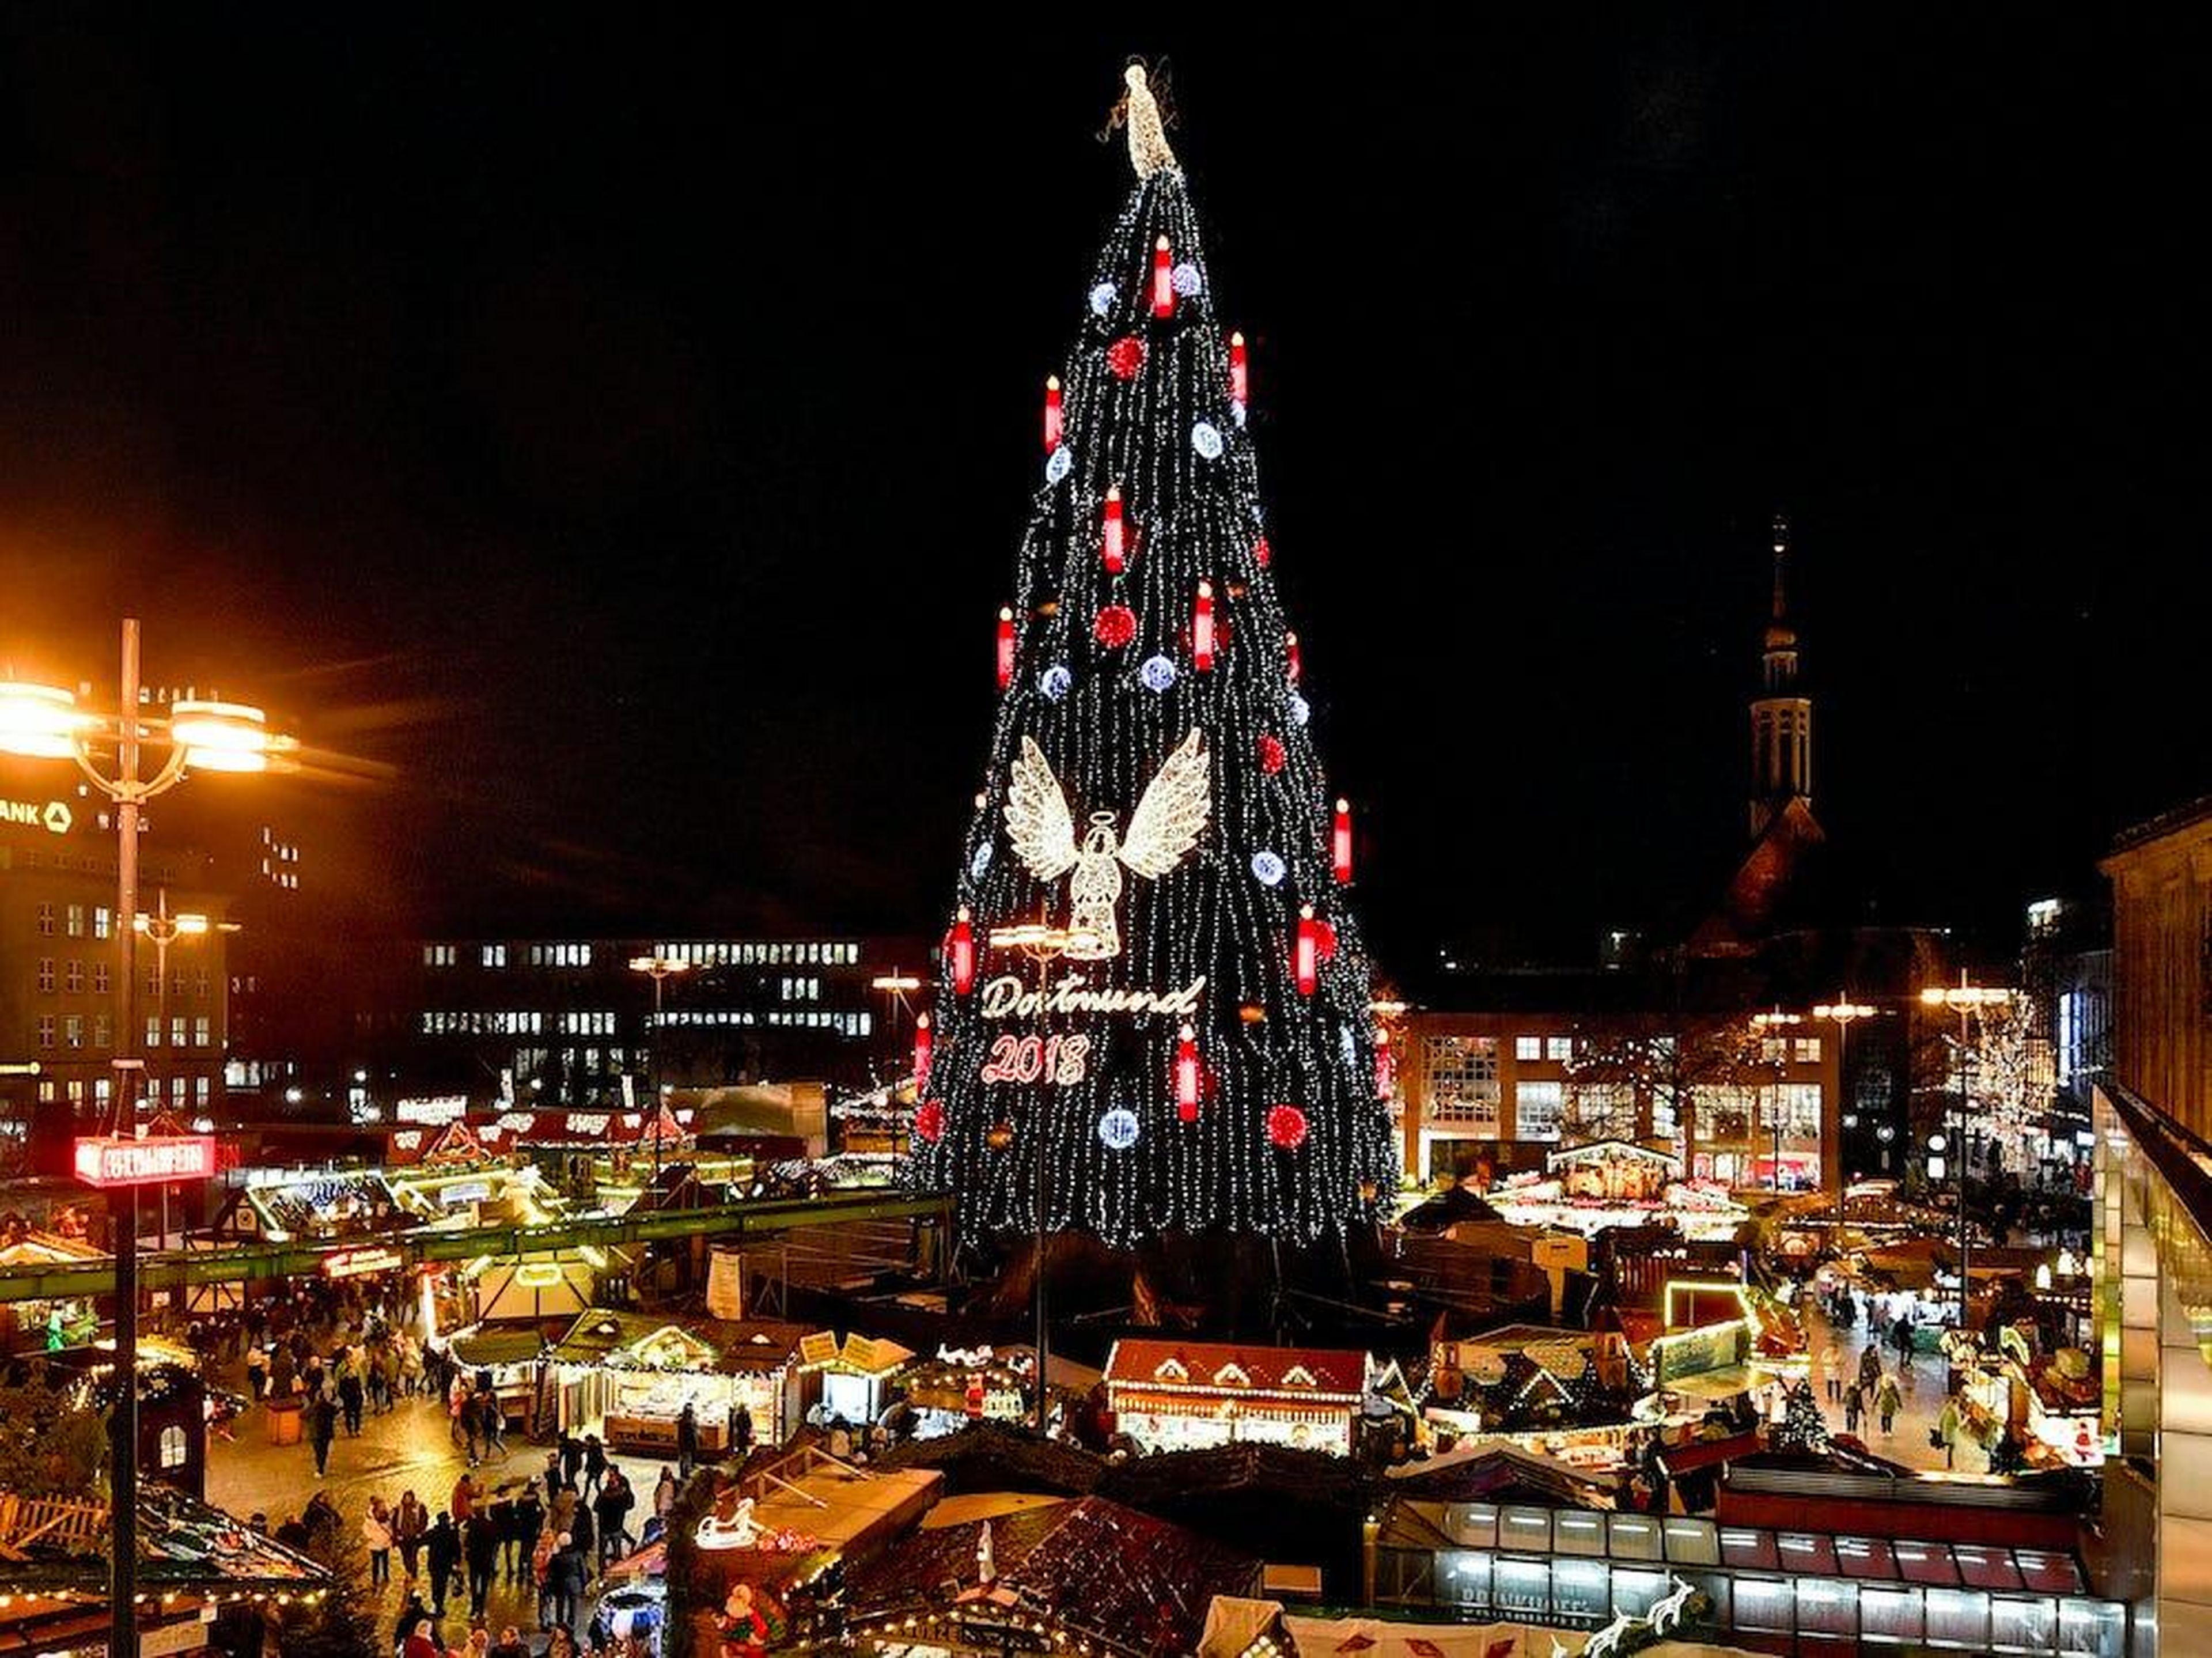 El mercado navideño de Dortmund, Alemania, el 17 de diciembre de 2018.